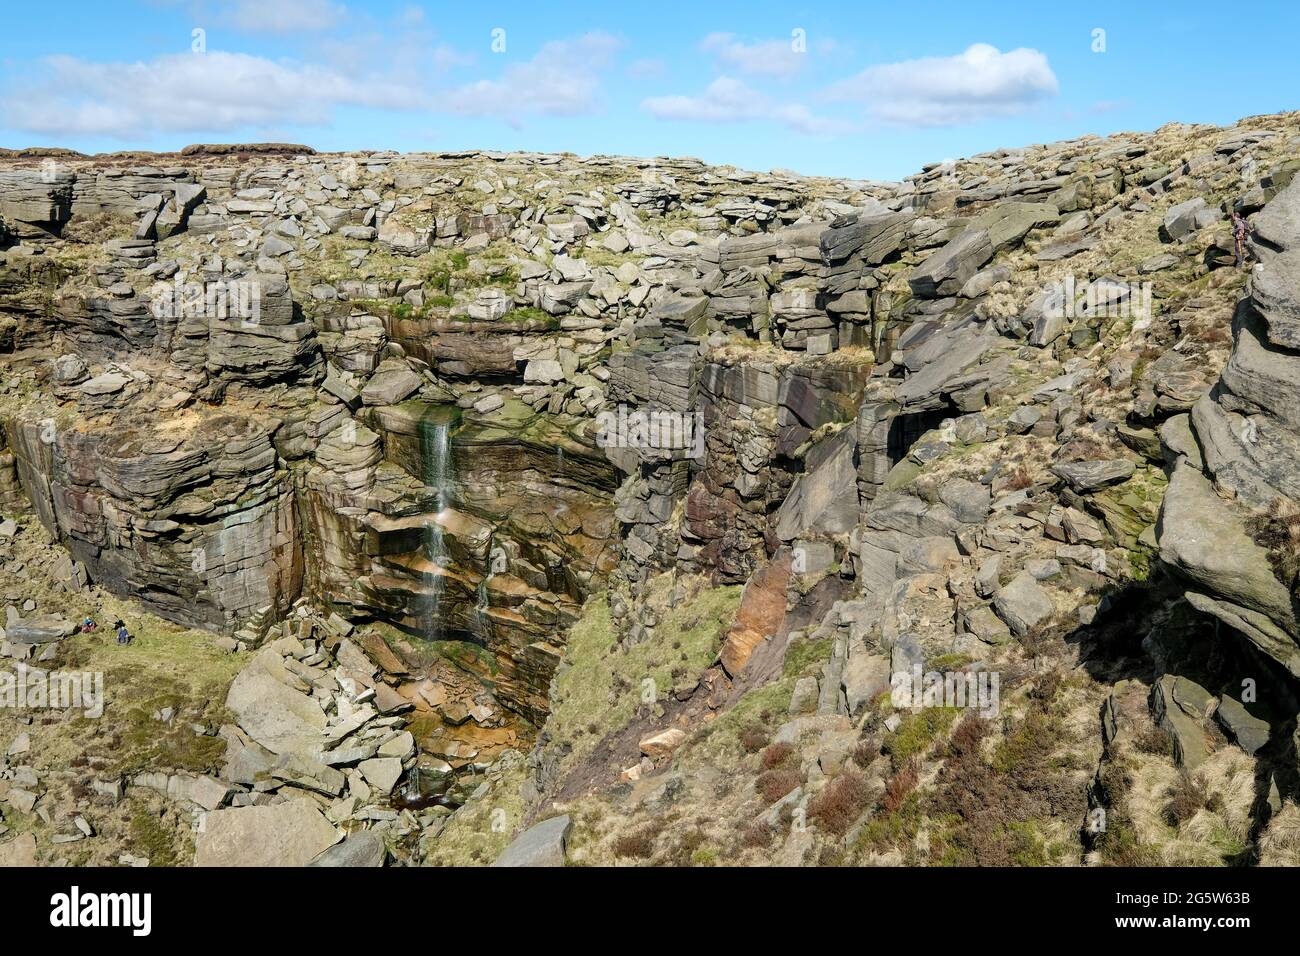 Una vista di Kinder Downfall, una gigantesca scogliera rocciosa con il fiume Kinder che scorre sul bordo. Foto Stock